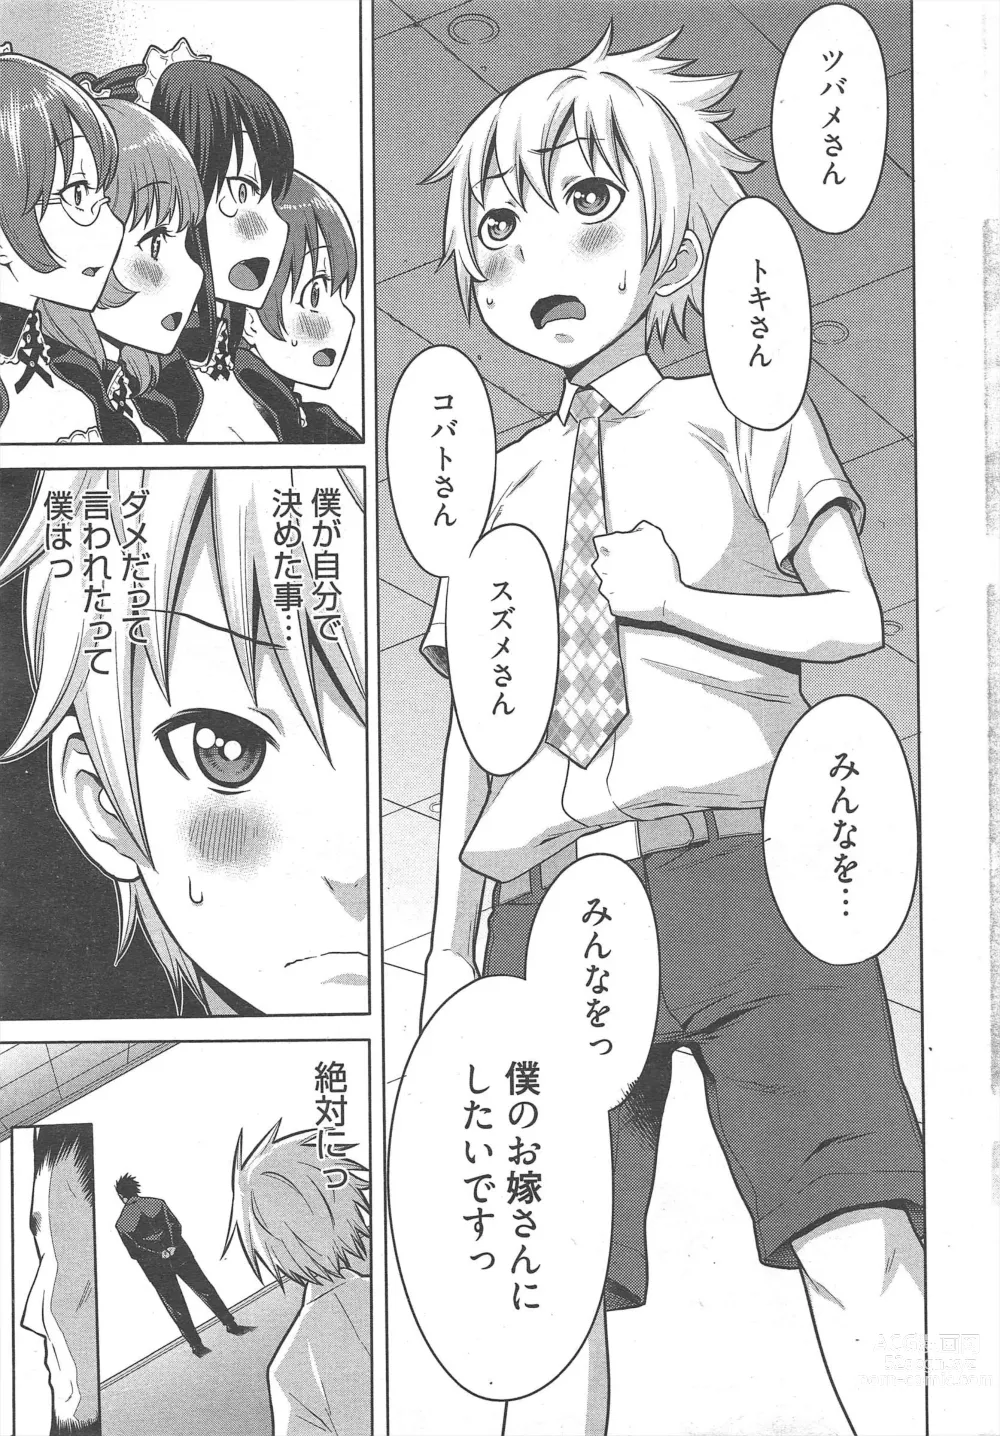 Page 11 of manga Manga Bangaichi 2013-02